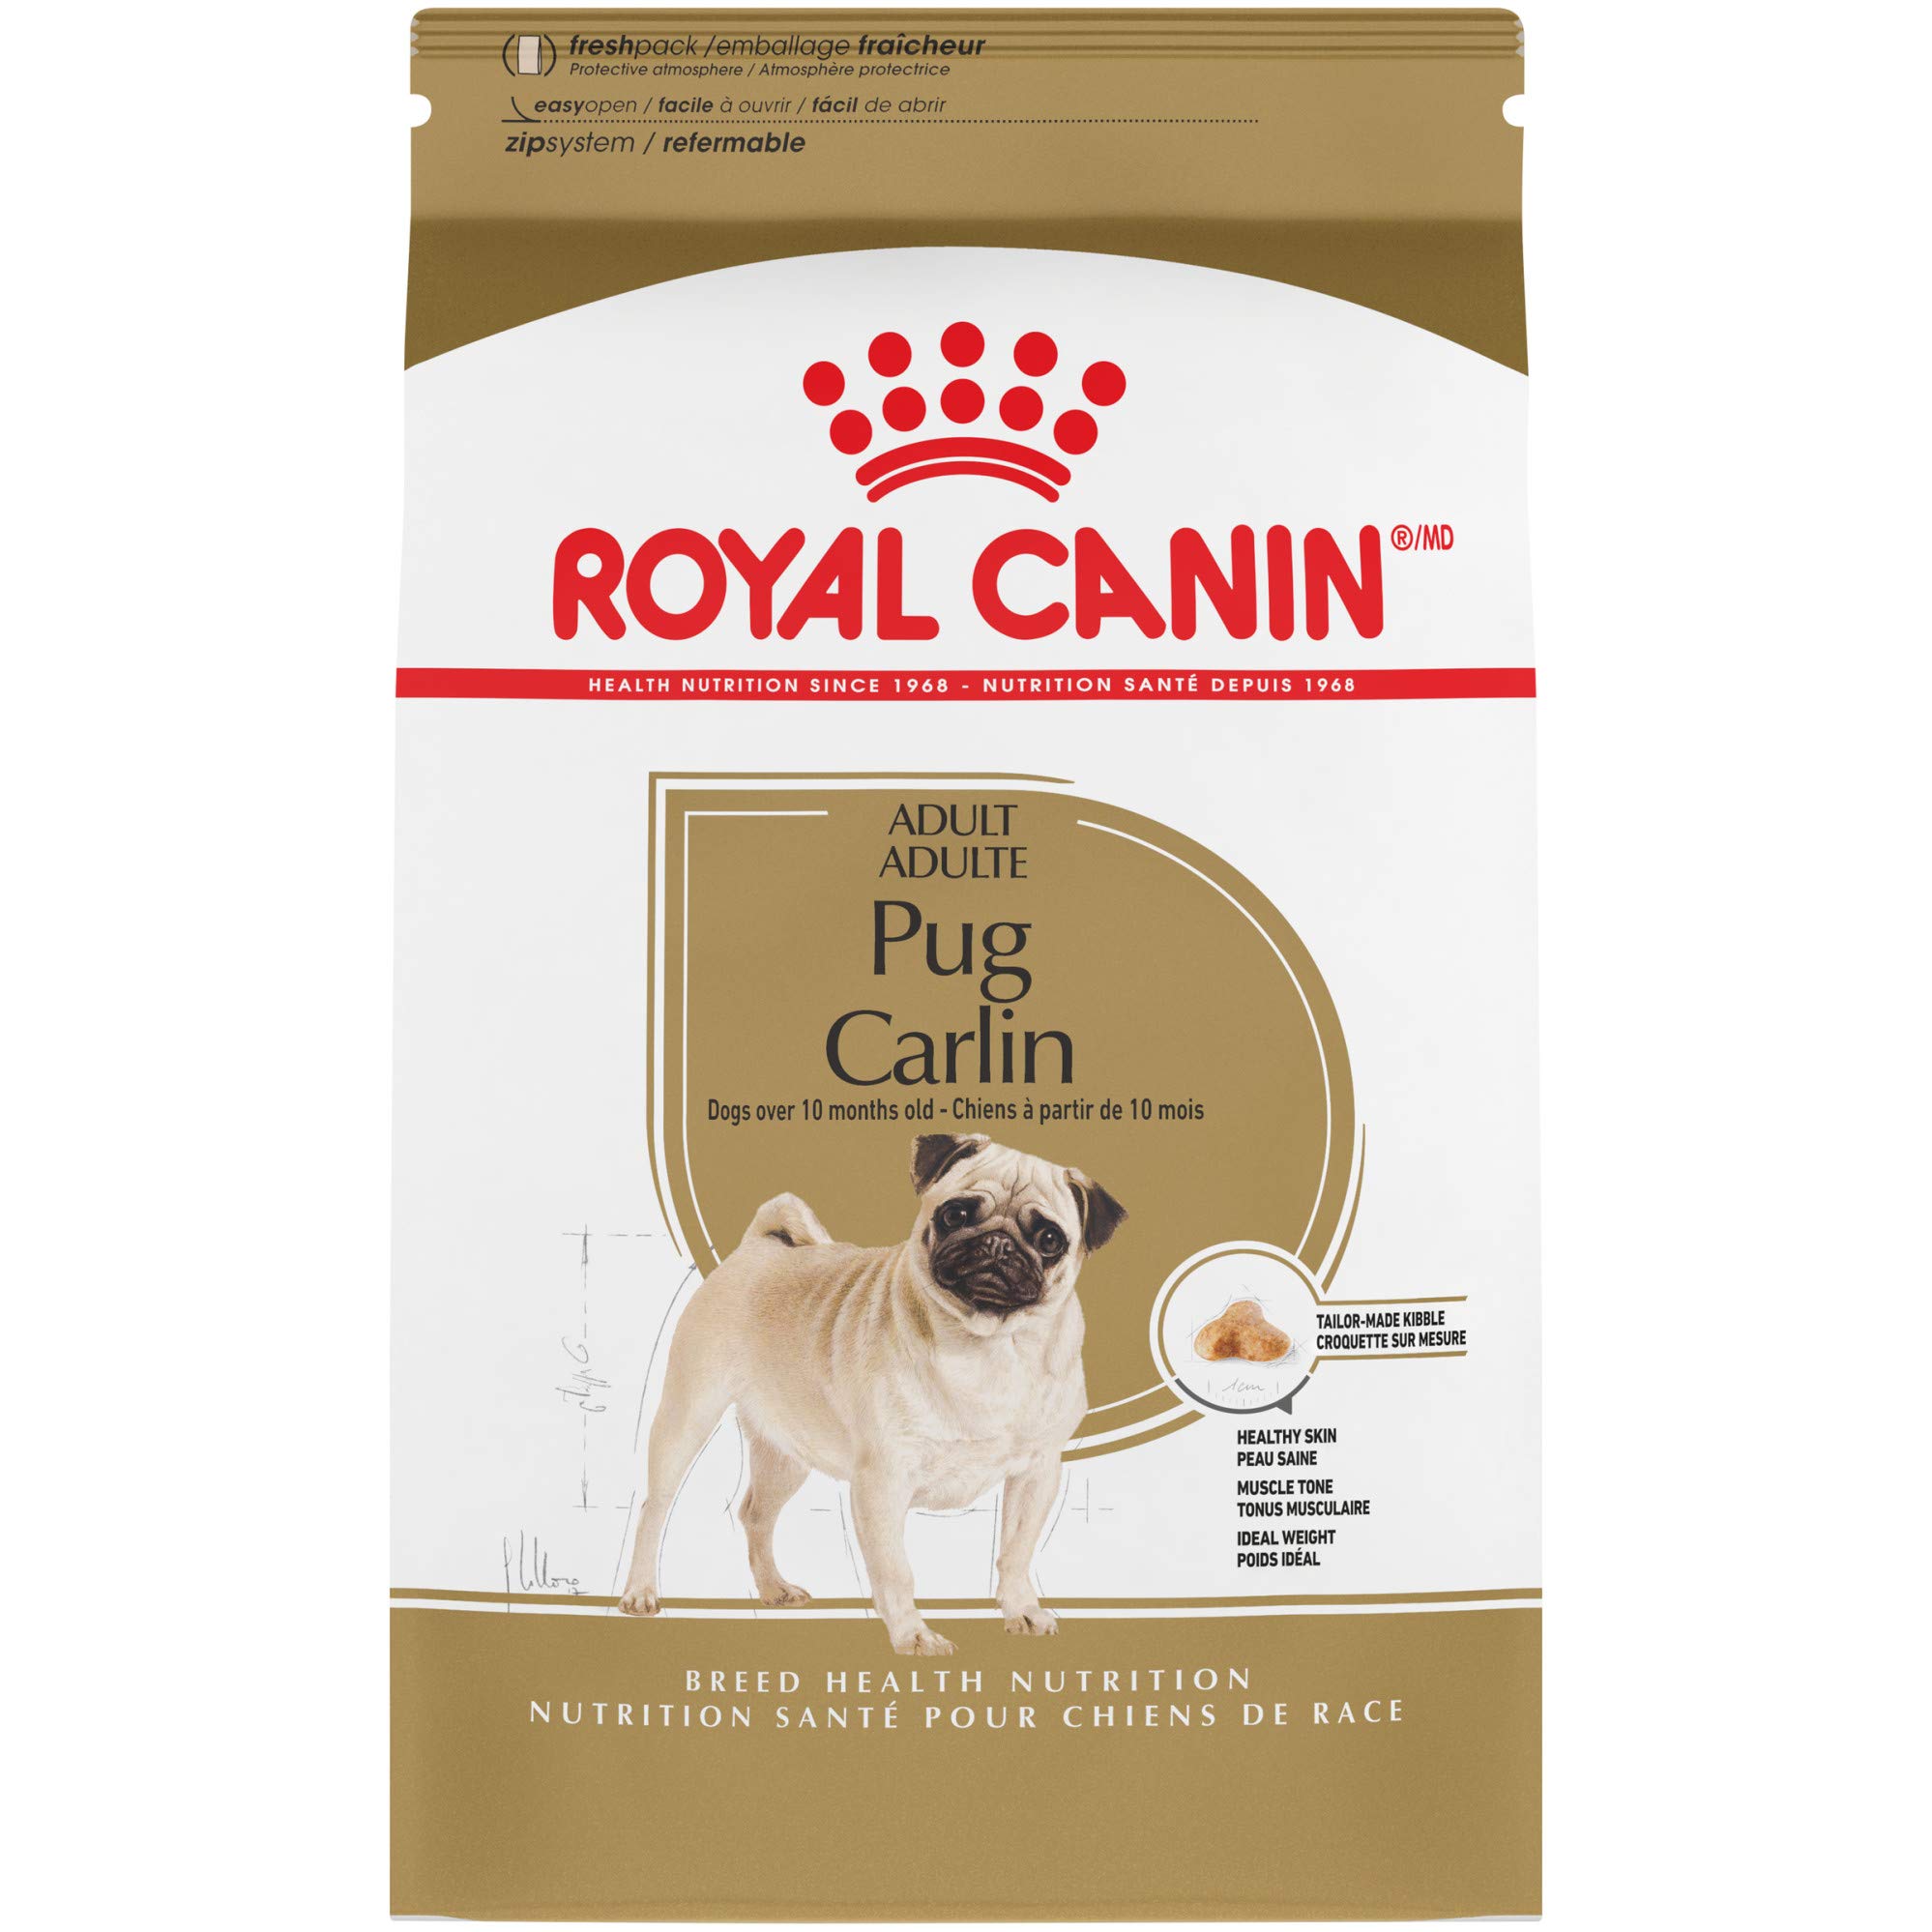 Royal Canin تولد الصحة والتغذية الصلصال الكبار أغذية الكلاب الجافة